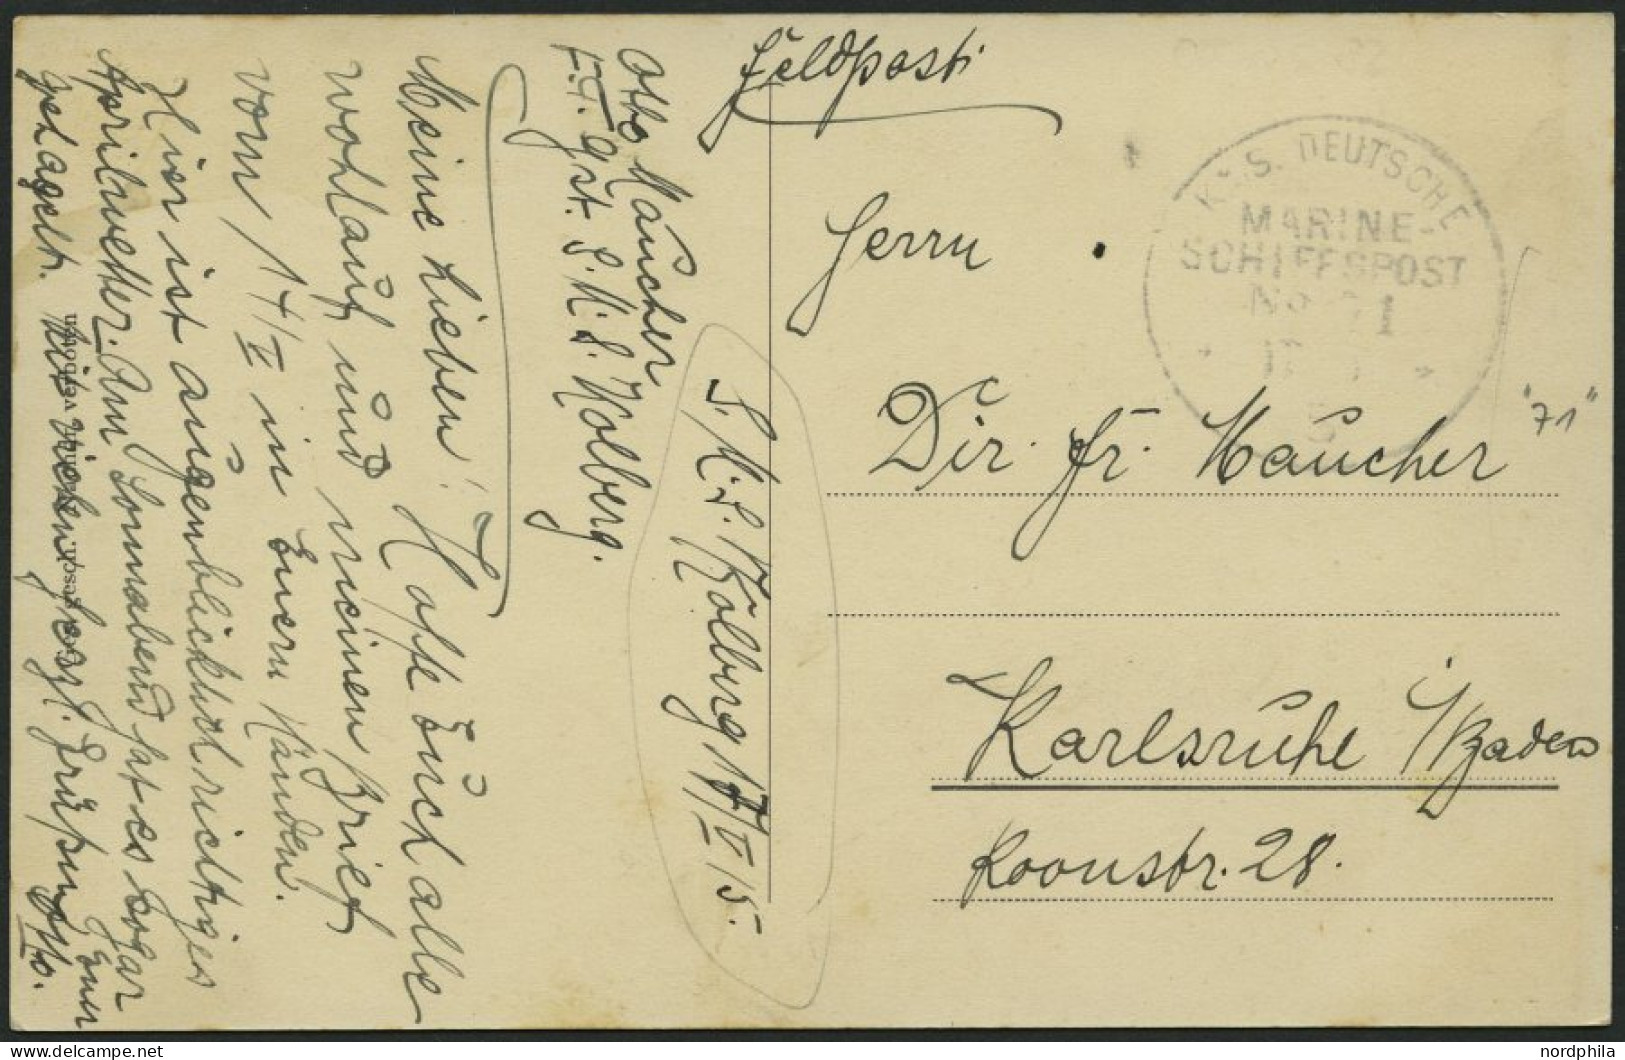 MSP VON 1914 - 1918 71 (Kleiner Kreuzer KOLBERG), 17.5.1915, Feldpost-Ansichtskarte (S.M.S. Emden) Von Bord Der Kolberg, - Marítimo